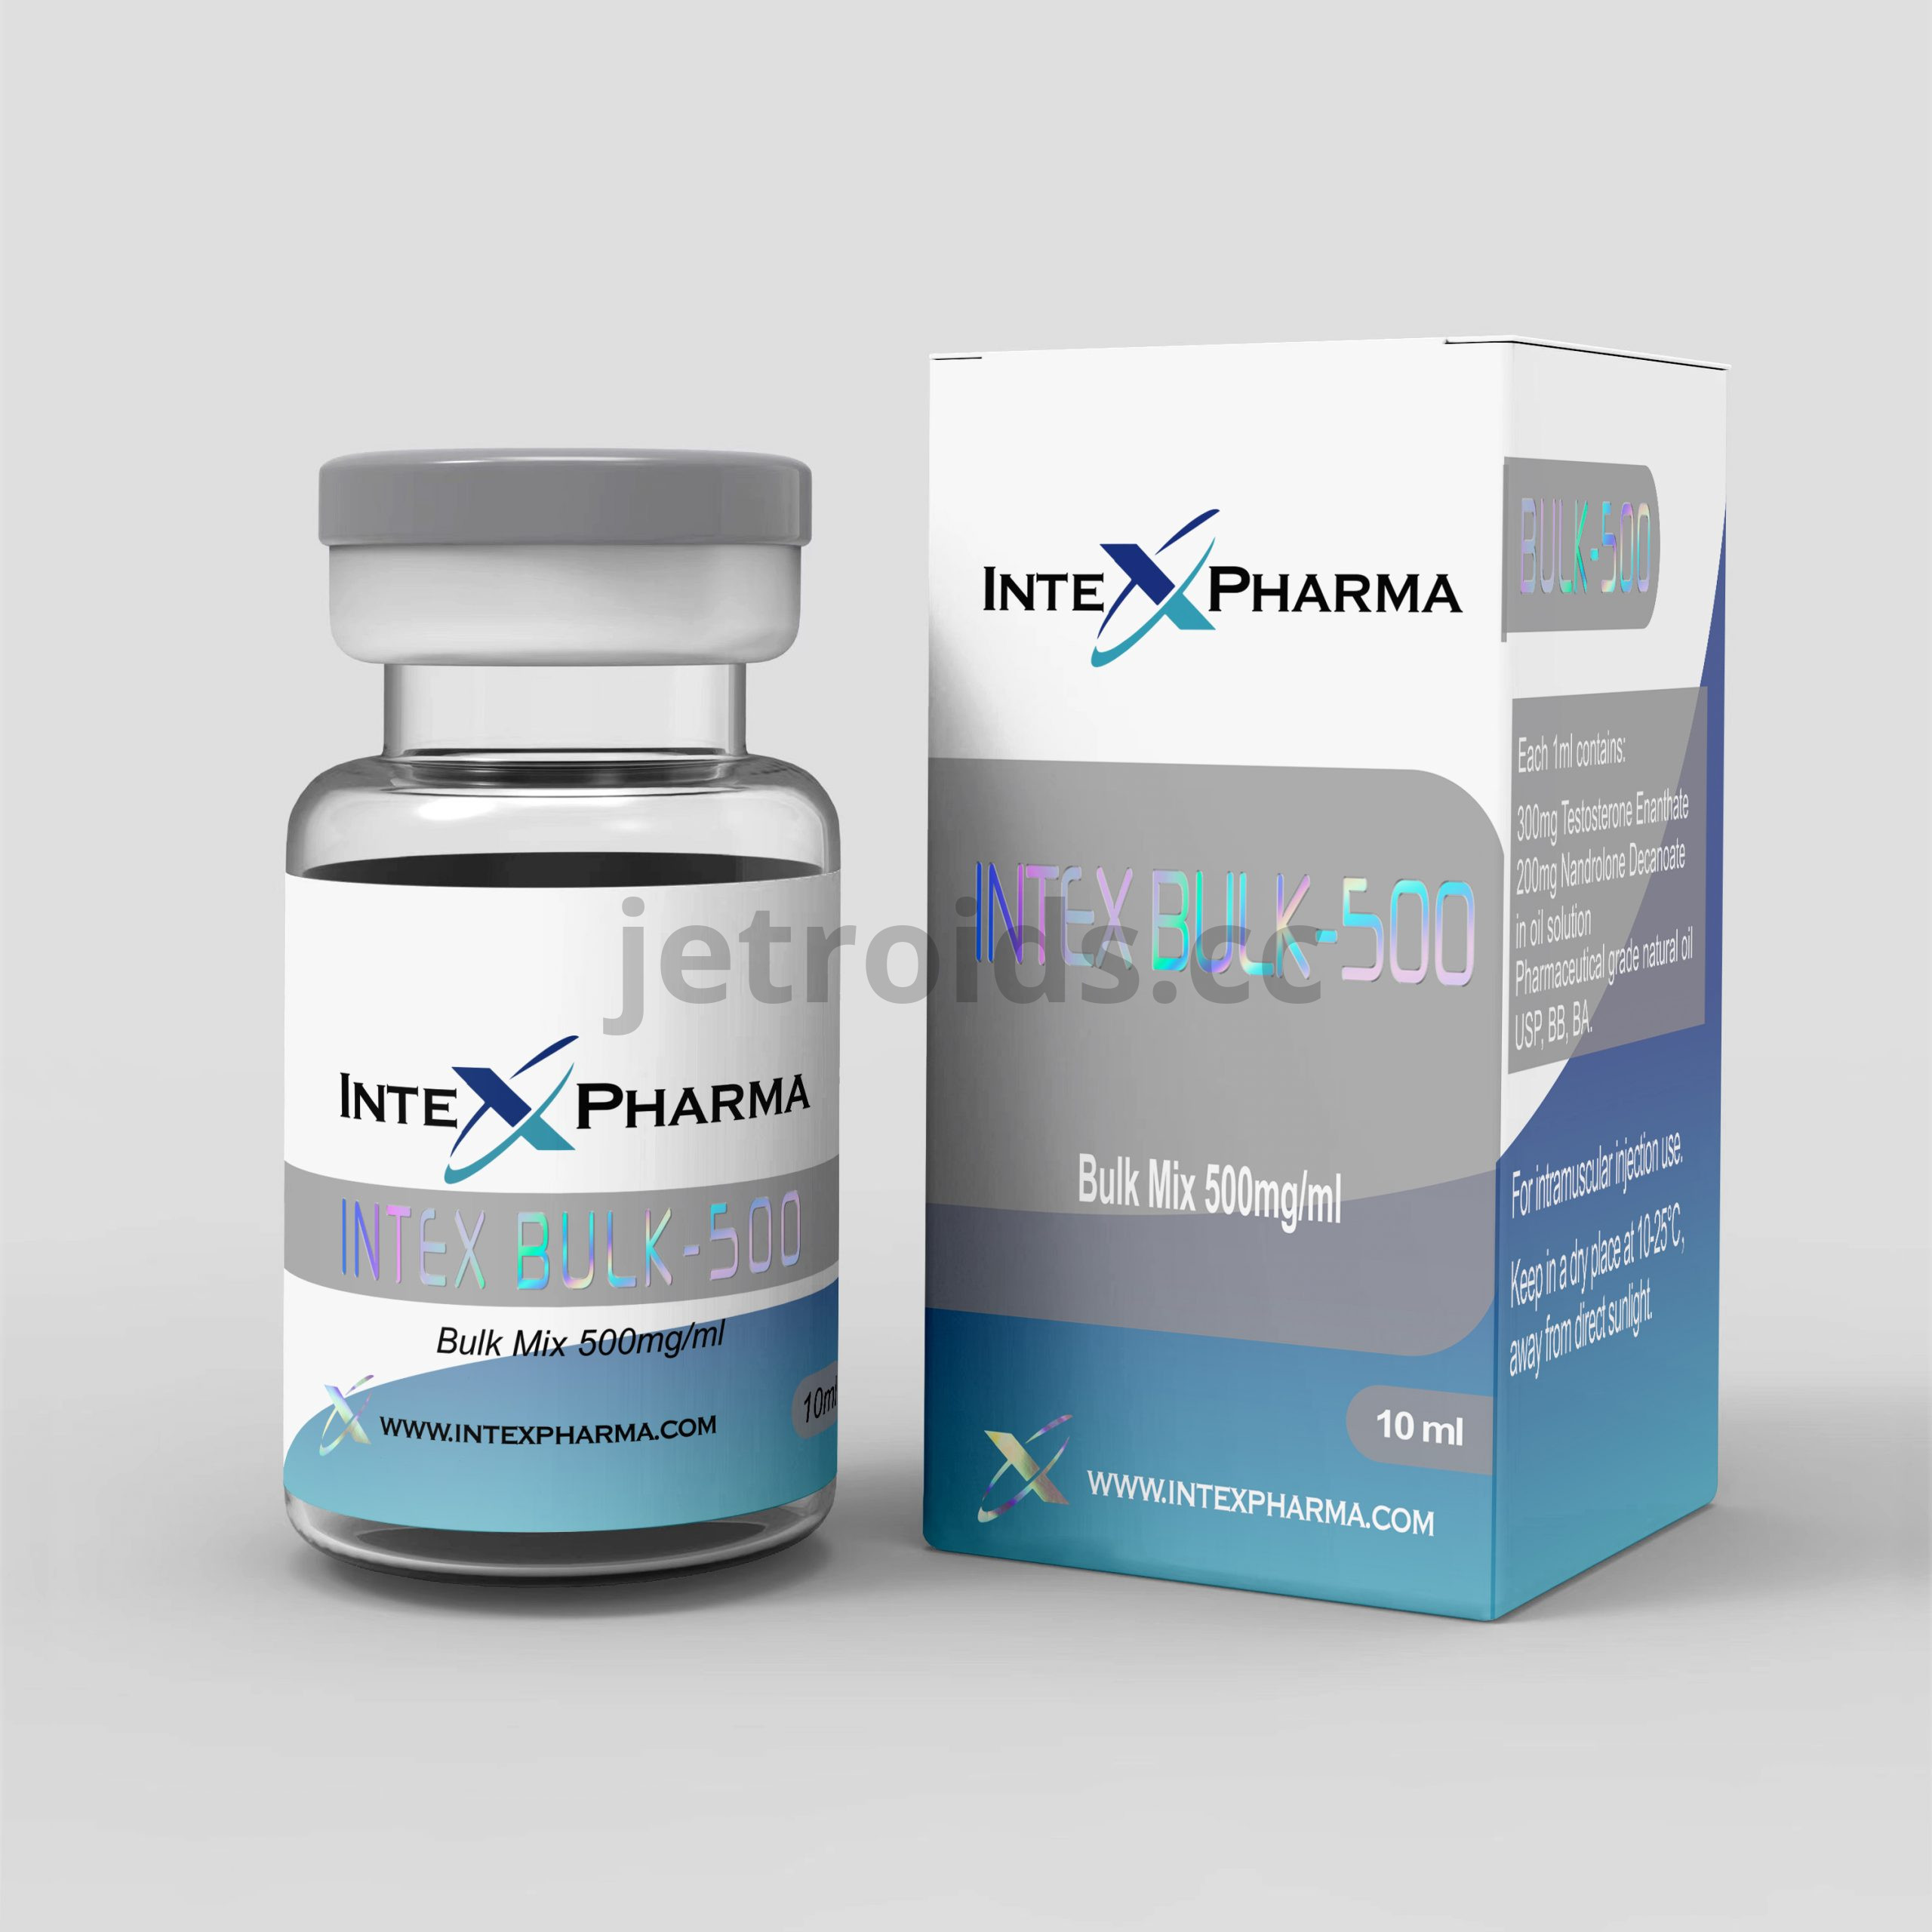 IntexPharma Intex Bulk-500 Product Info